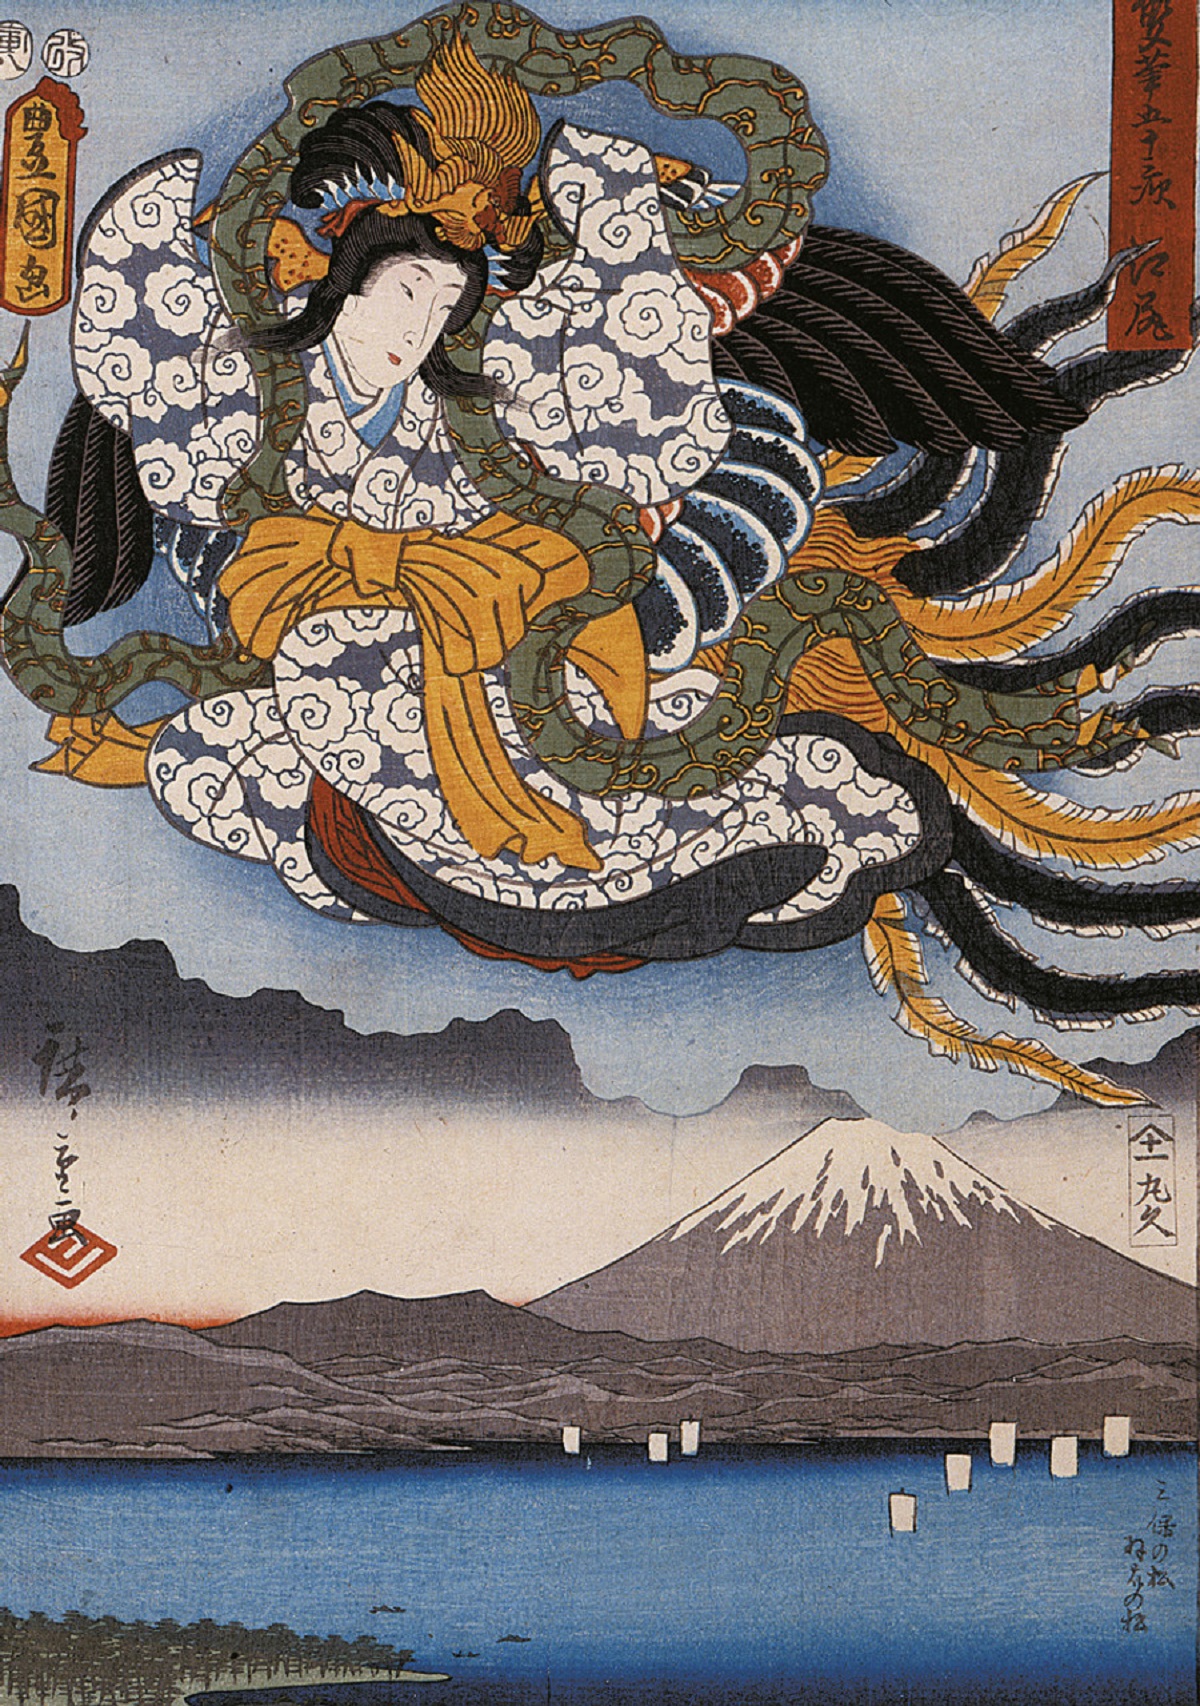 Puzzle 1000. Hiroshige - Amaterasu